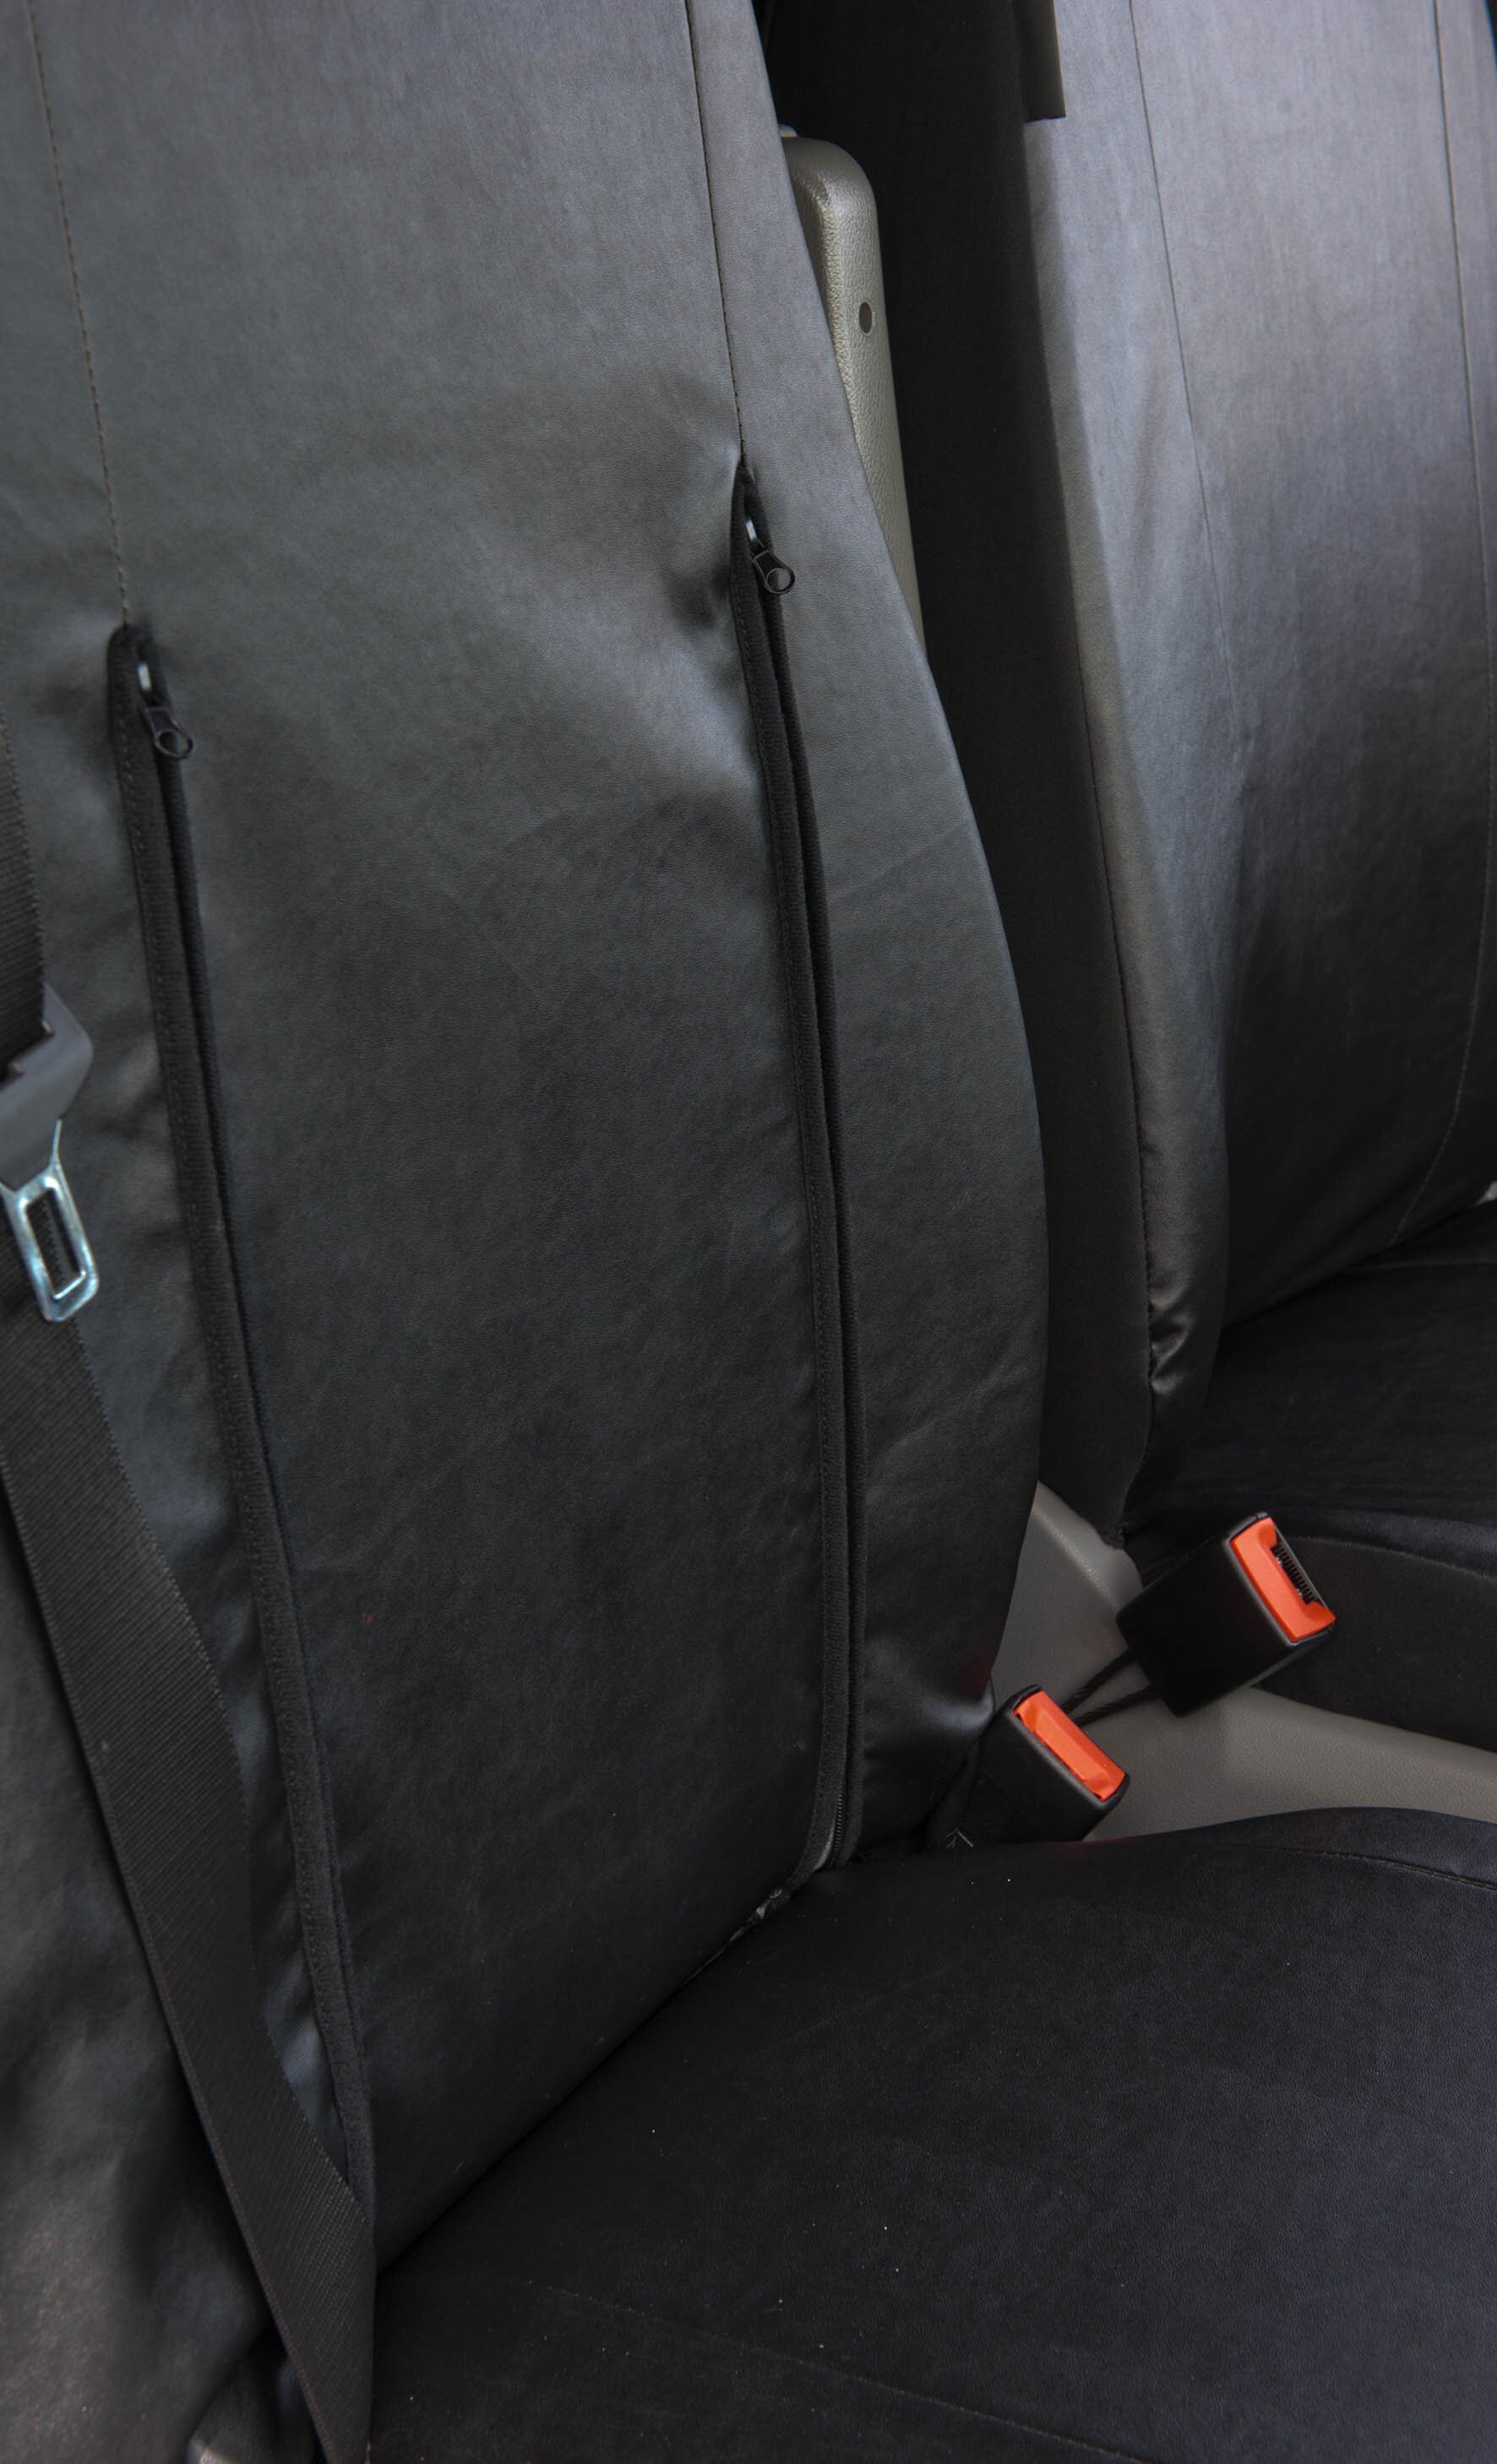 Housse de siège Transporter en simili cuir pour VW Crafter, Mercedes Sprinter, siège simple et double